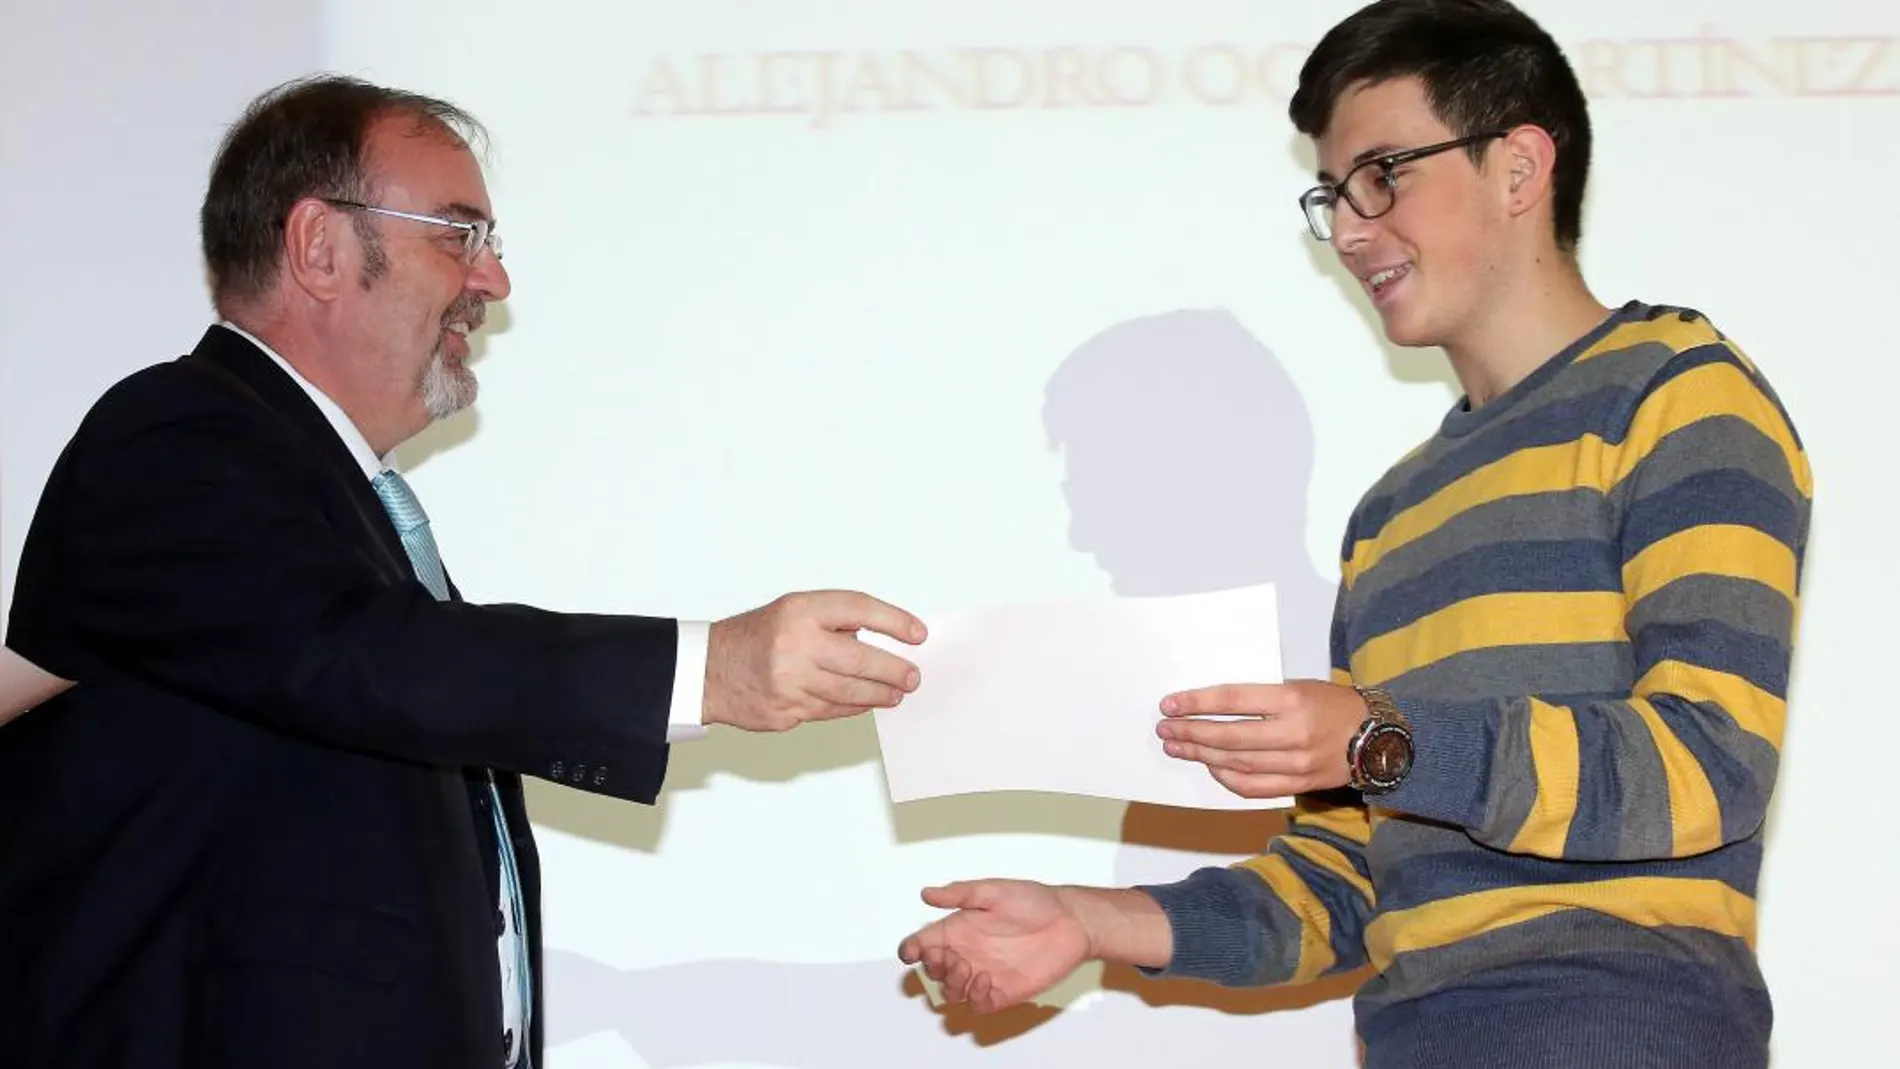 El consejero Fernando Rey entrega en Valladolid a un alumno de la ESO uno de los Premios Educación 2017